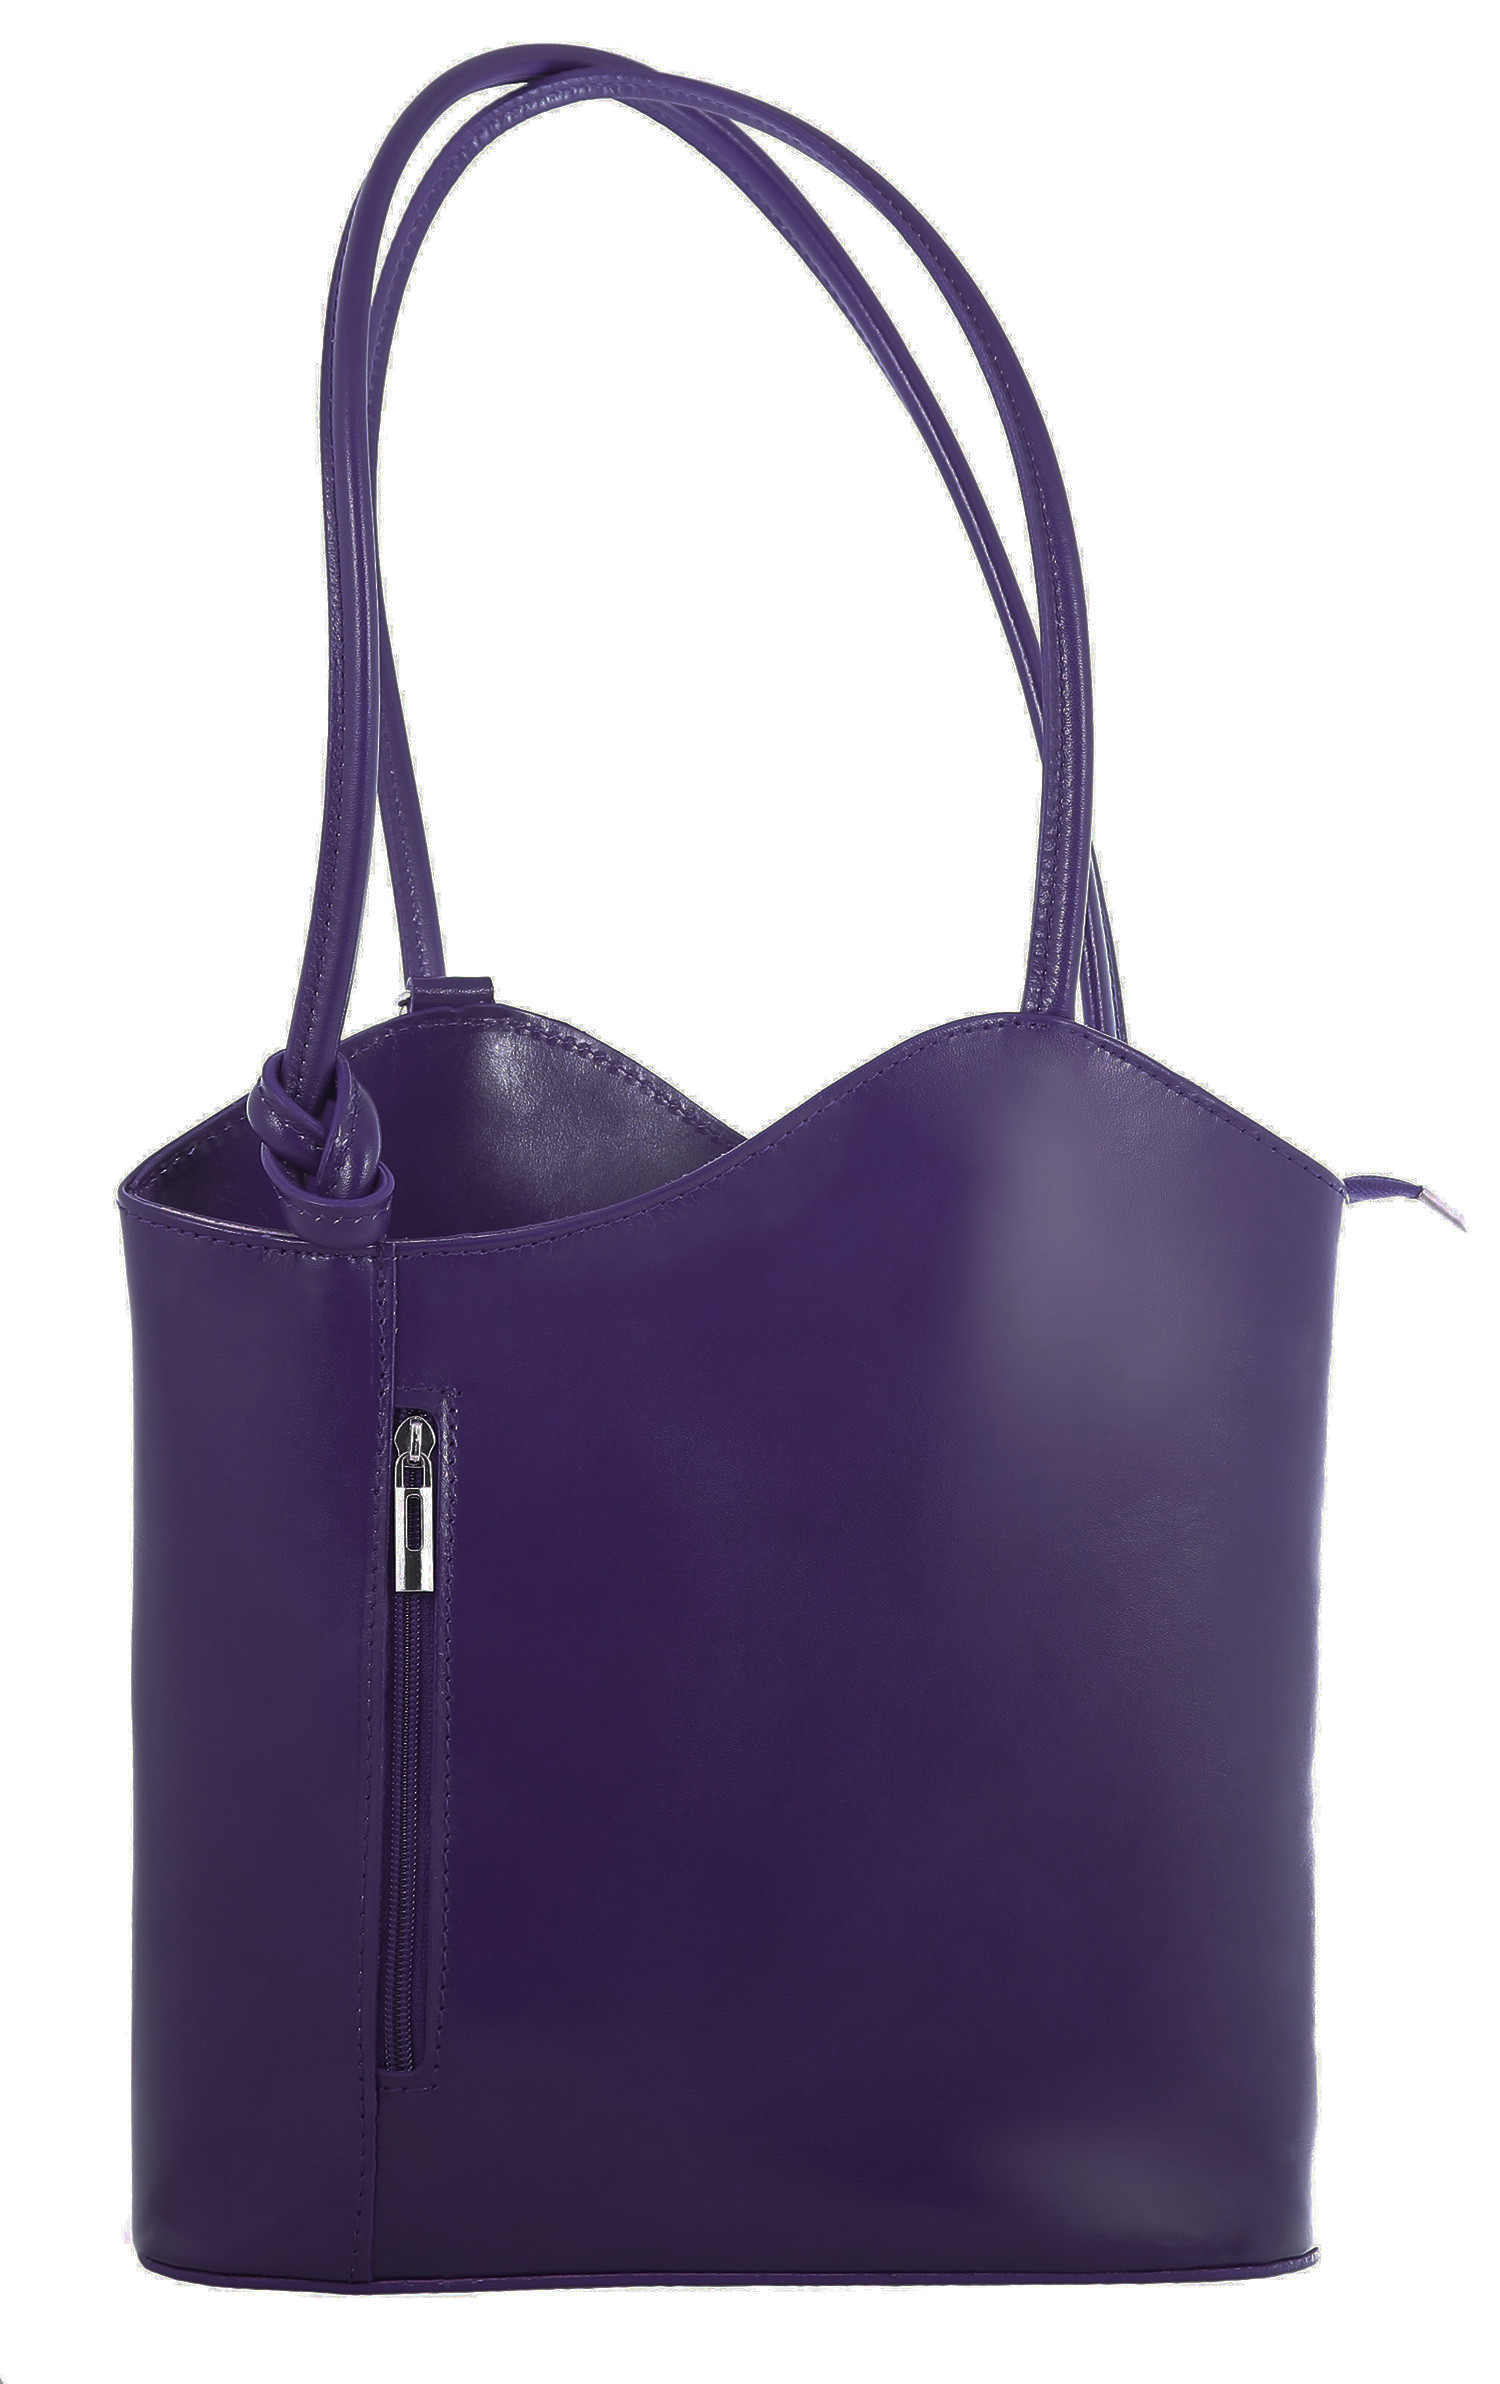 Luxusní nadčasová fialová kožená kabelka přes rameno Grand Royal